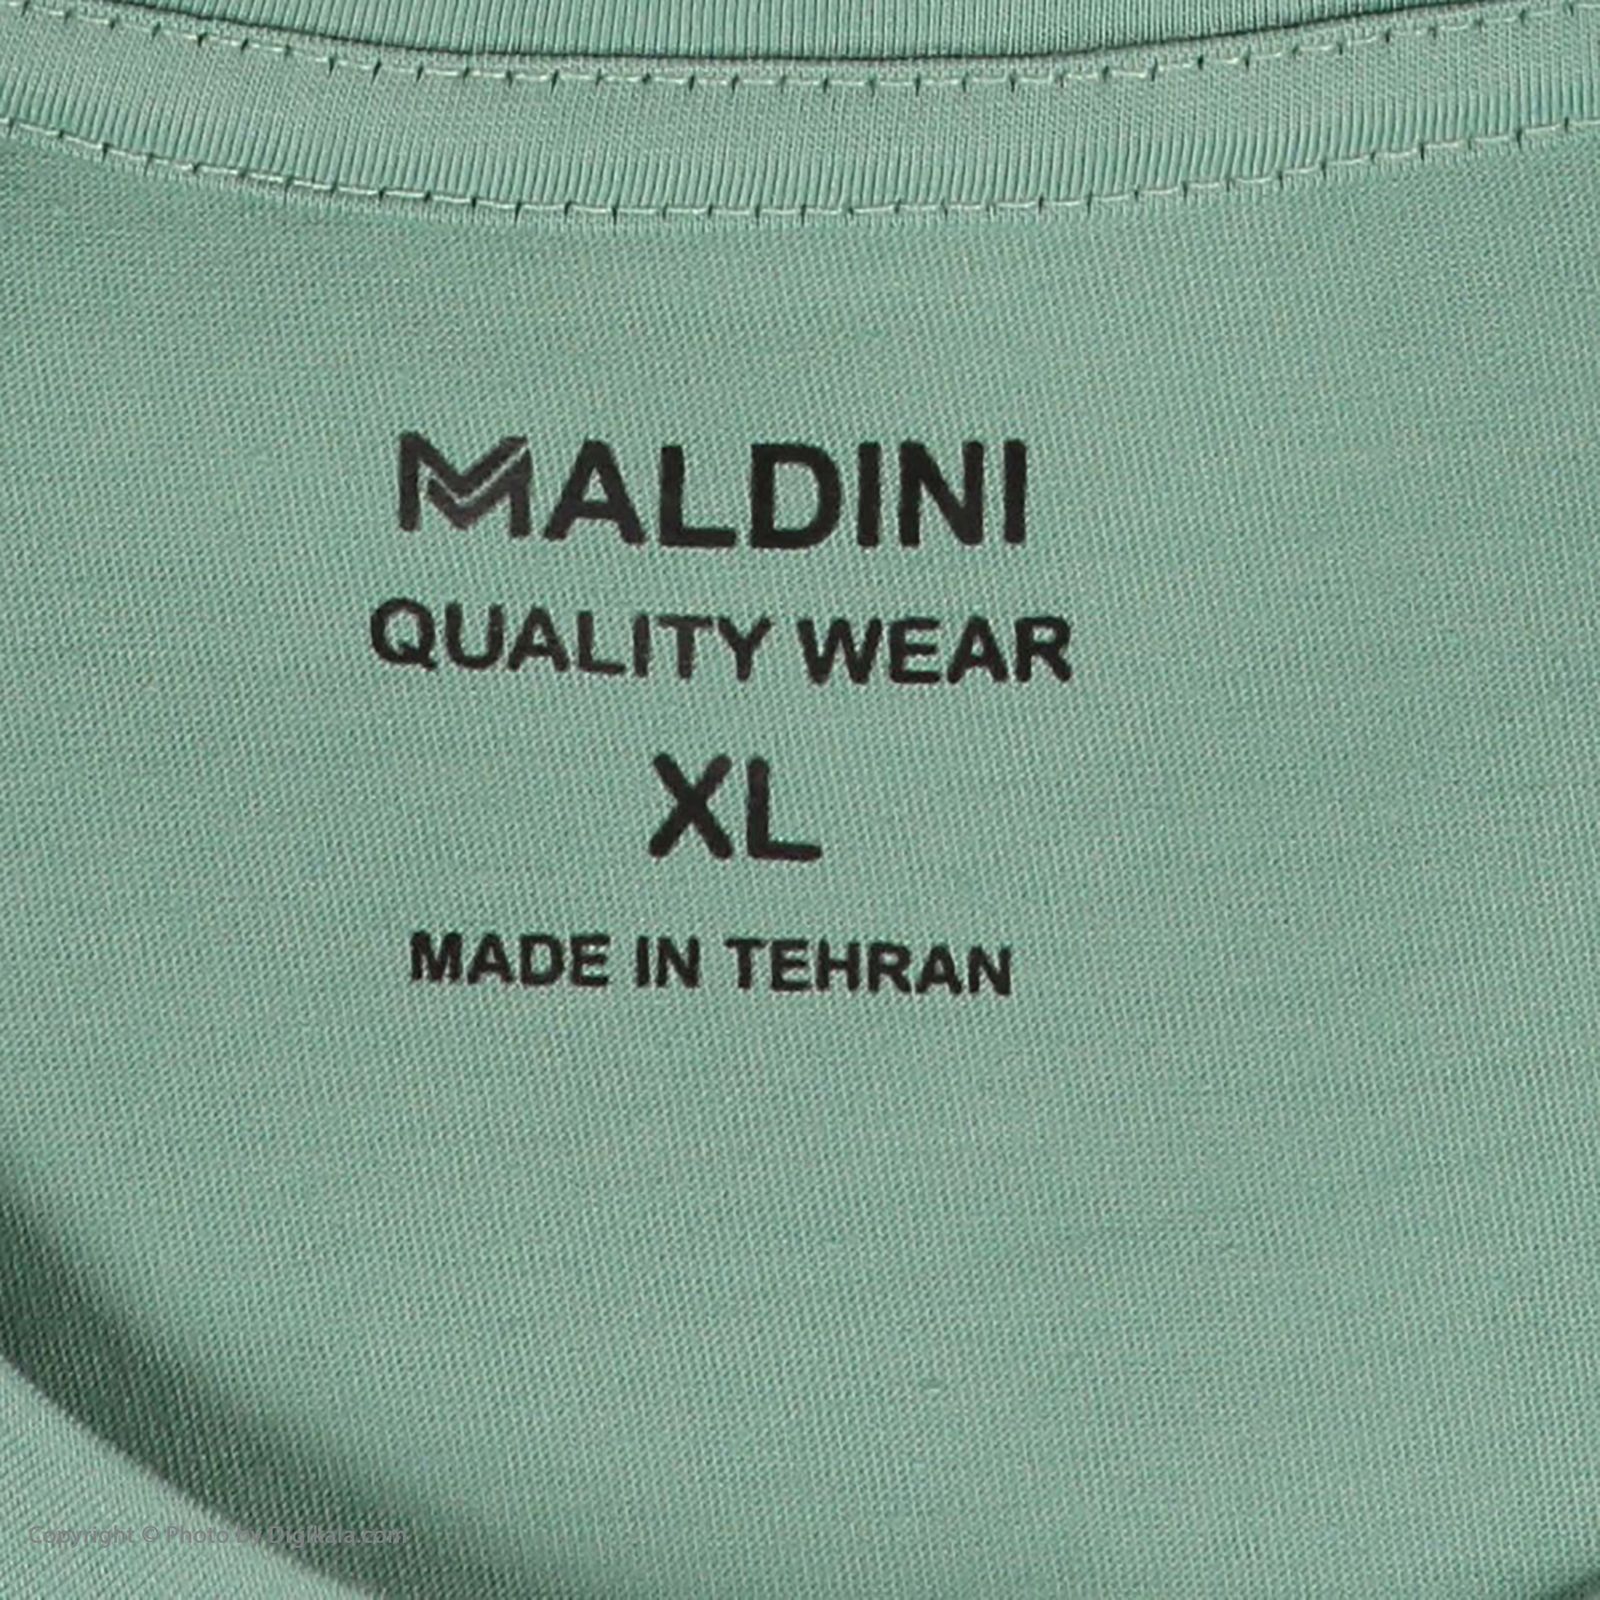 تی شرت آستین کوتاه مردانه مالدینی مدل T-166 -  - 5